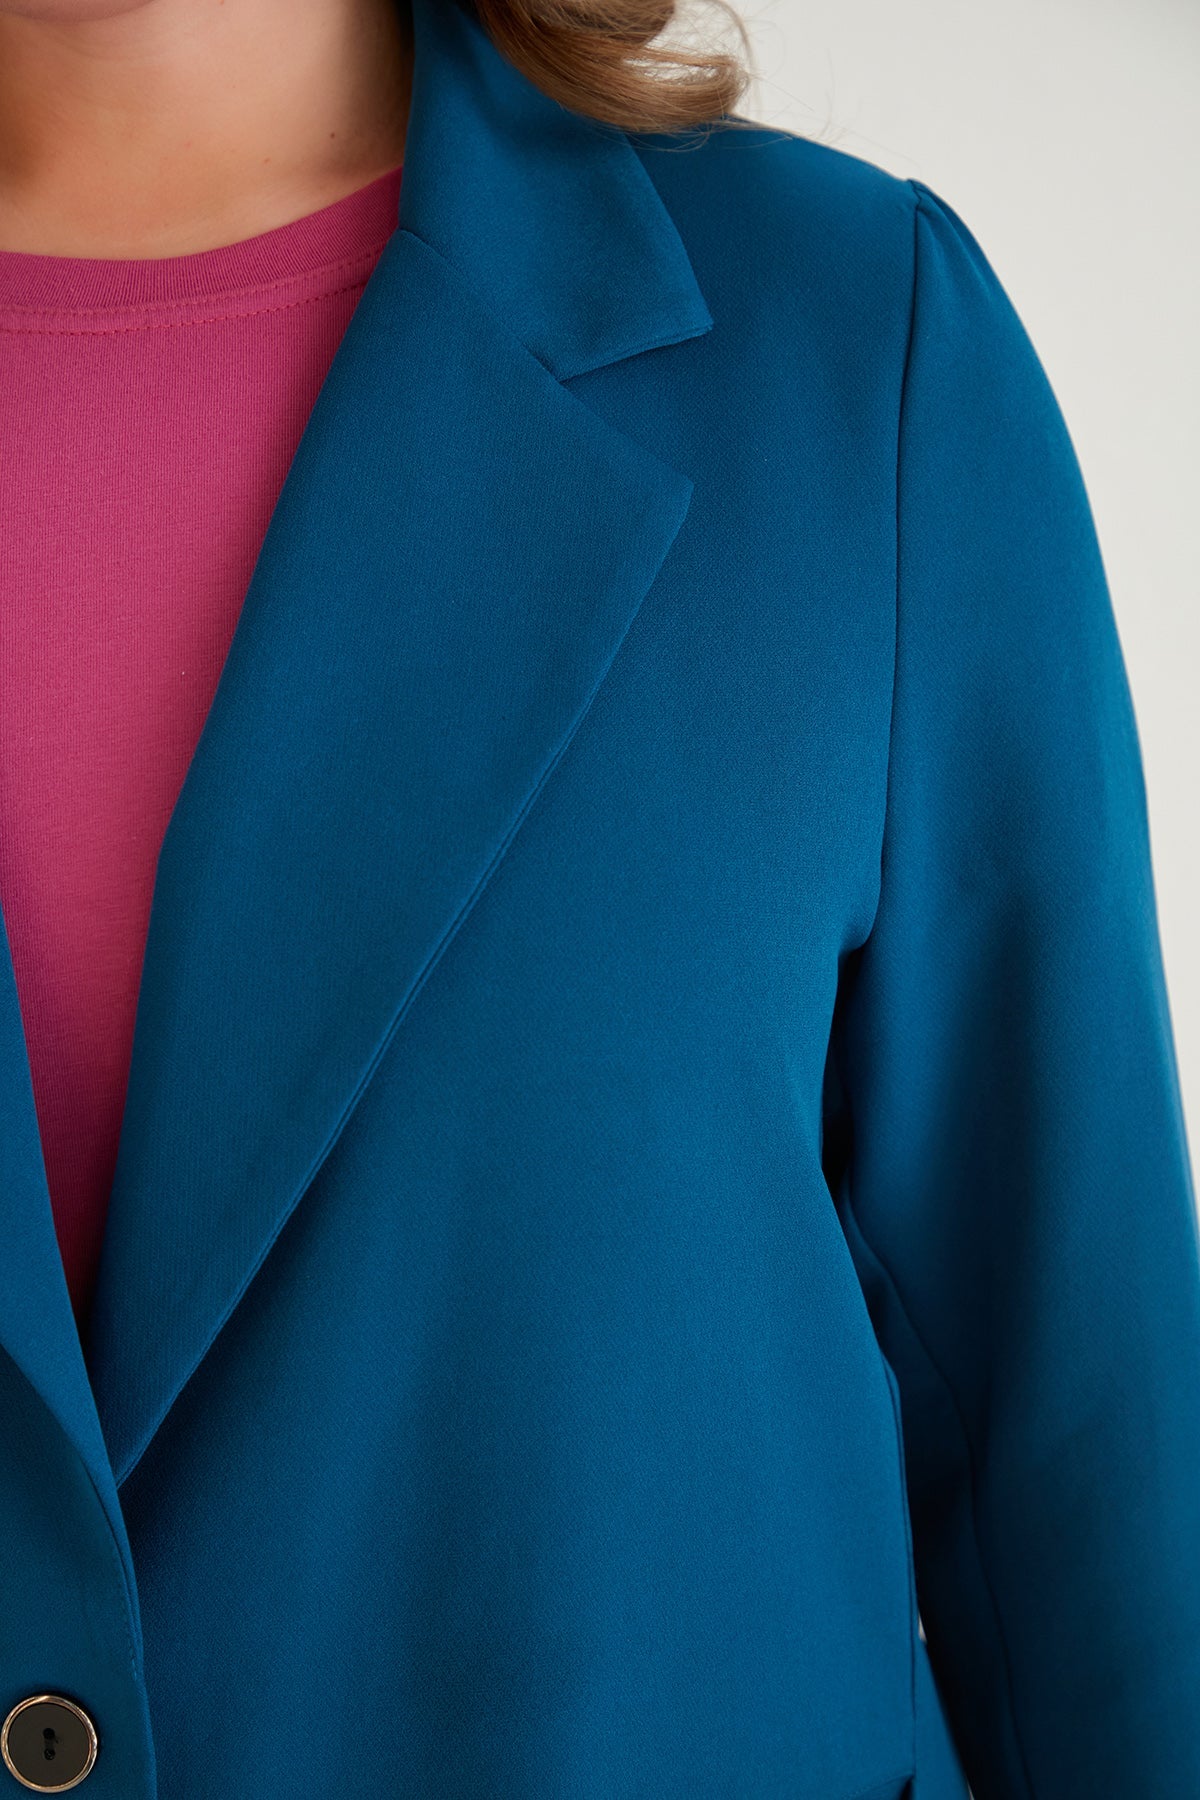 Ανοιξιάτικο σακάκι σε τρία χρώματα σε μεγάλα μεγέθη  - Μπλέ